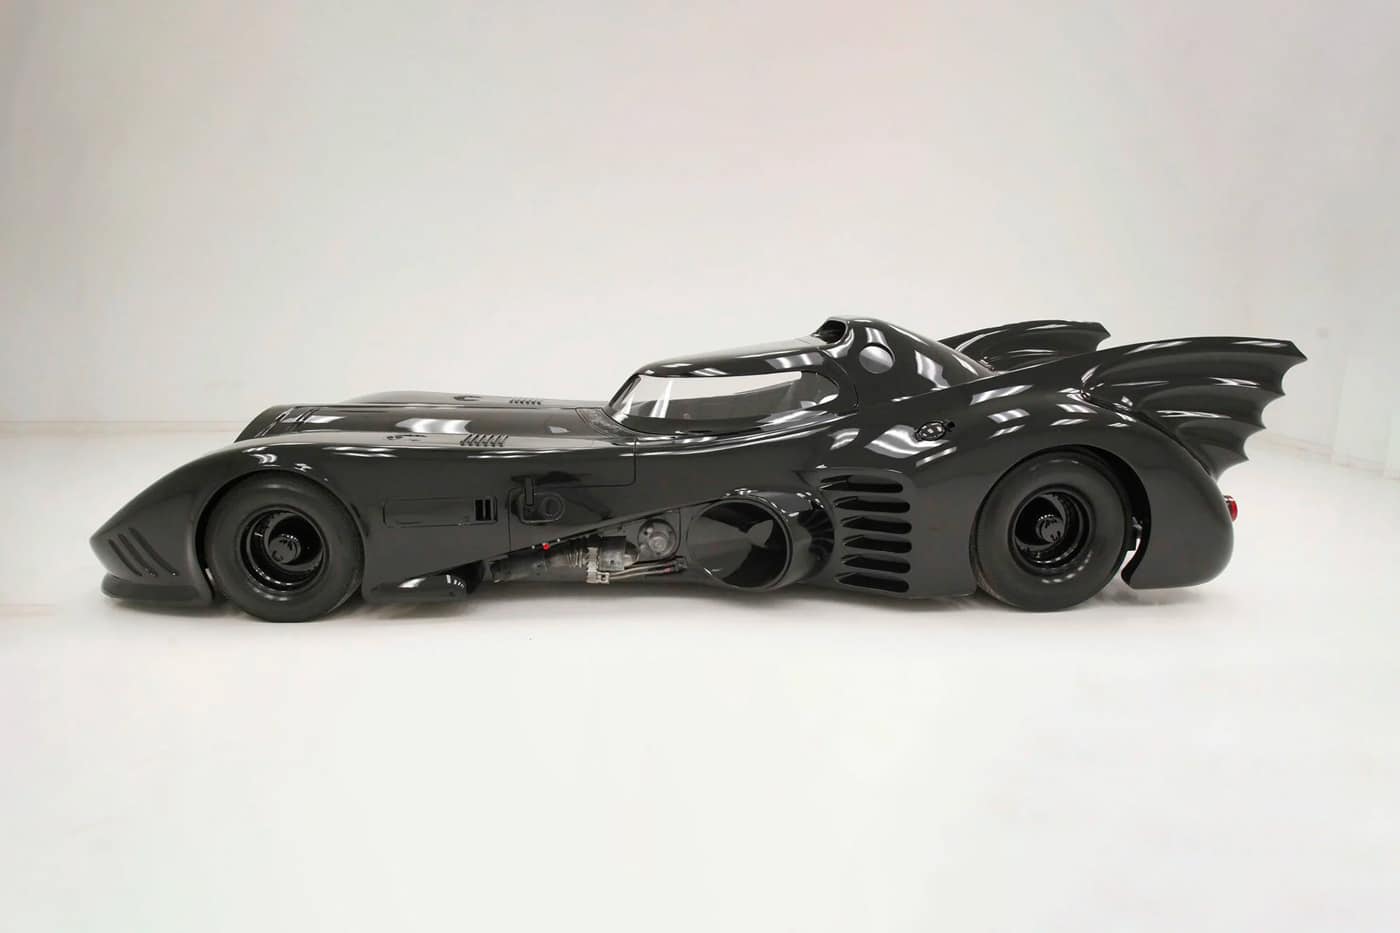 PHOTOS. La Batmobile du Batman de Tim Burton remise au goût du jour